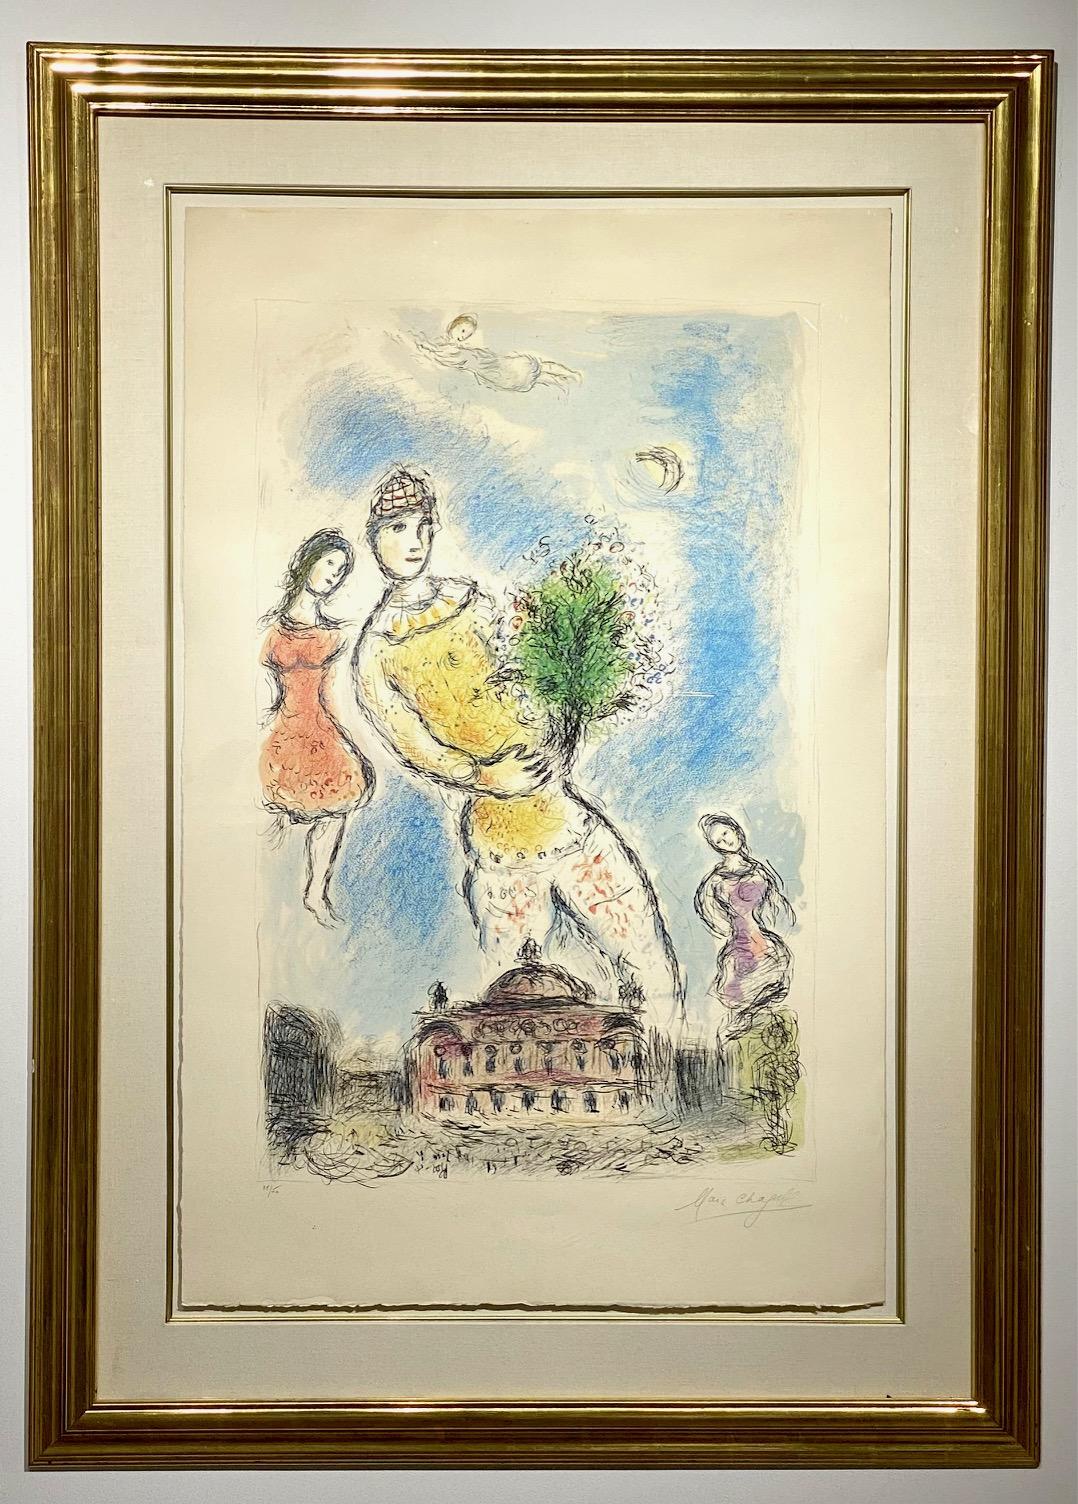 Marc Chagall (Russie/France 1887-1985)
"Dans le ciel de l'opéra
lithographie couleur sur Arches

1980

Signée au crayon en bas à droite, numérotée 31/50 en bas à gauche ; publiée par les Editions Maeght, Paris

Image : 37 1/2 x 24 po (95,3 x 61 cm),